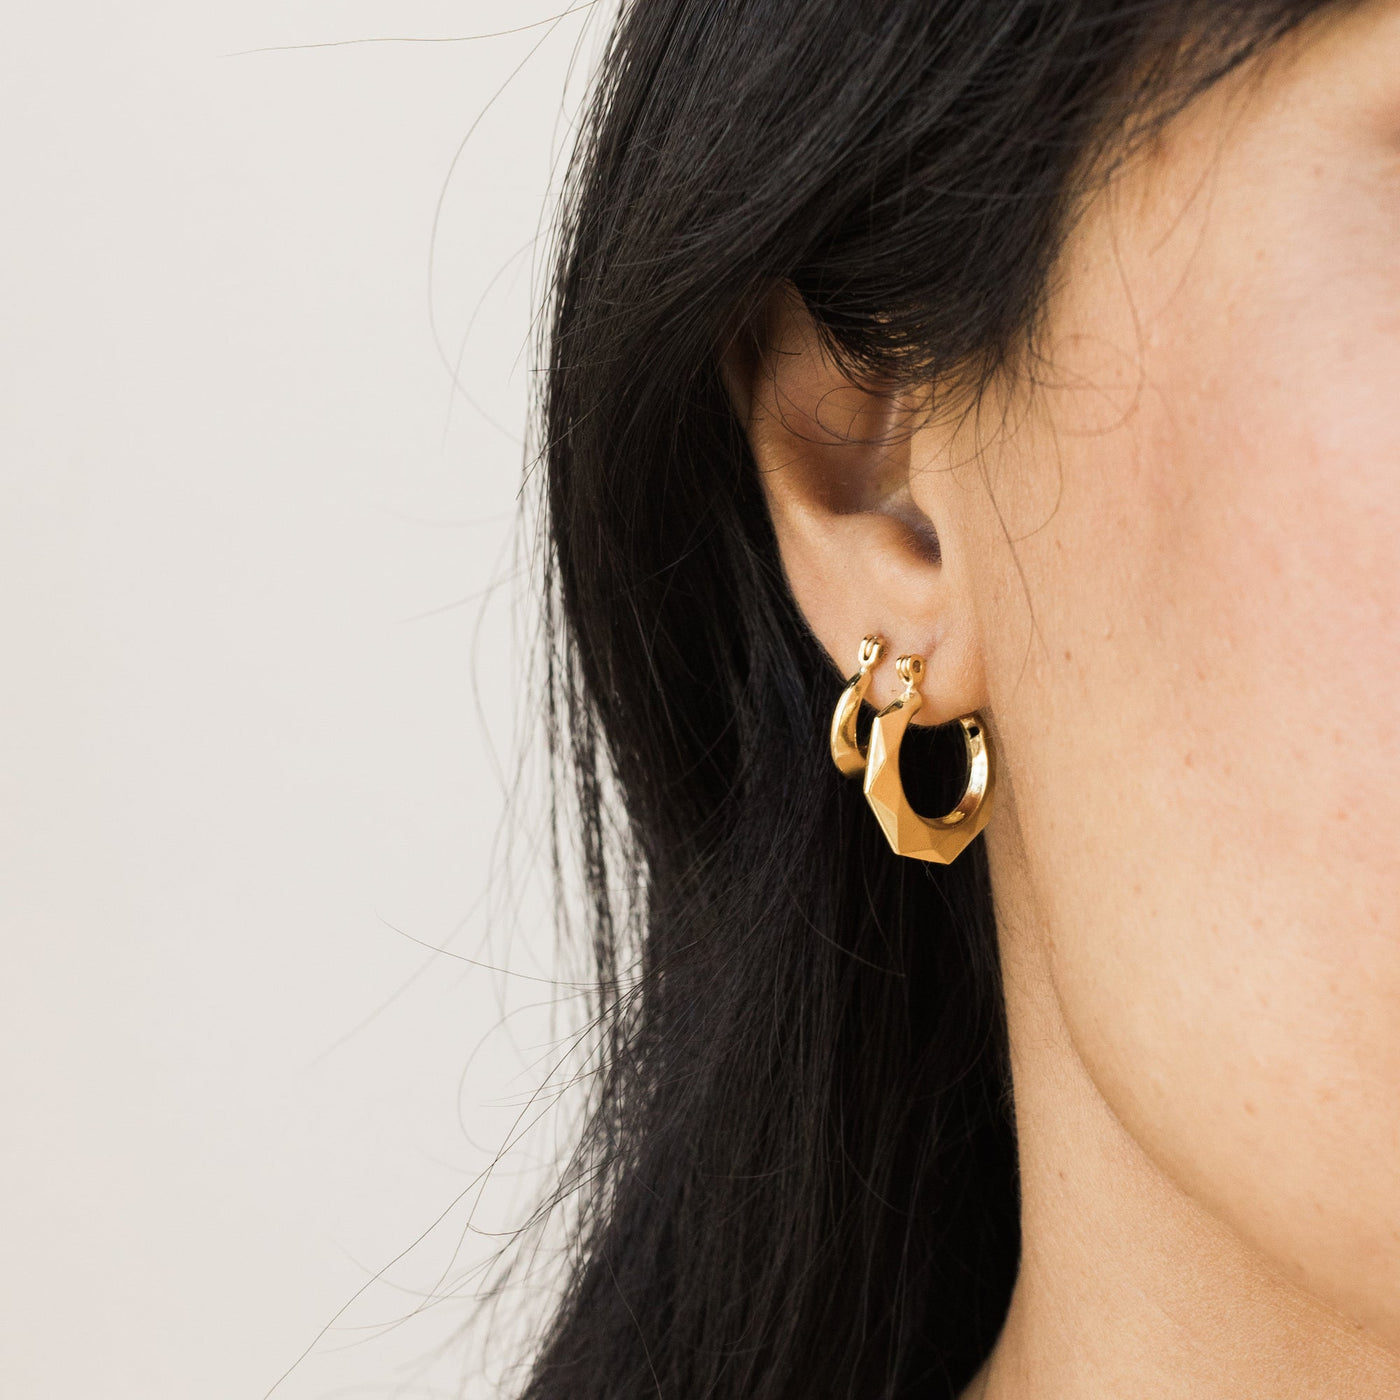 Small Modern Hoop Earrings | Simple & Dainty Jewelry